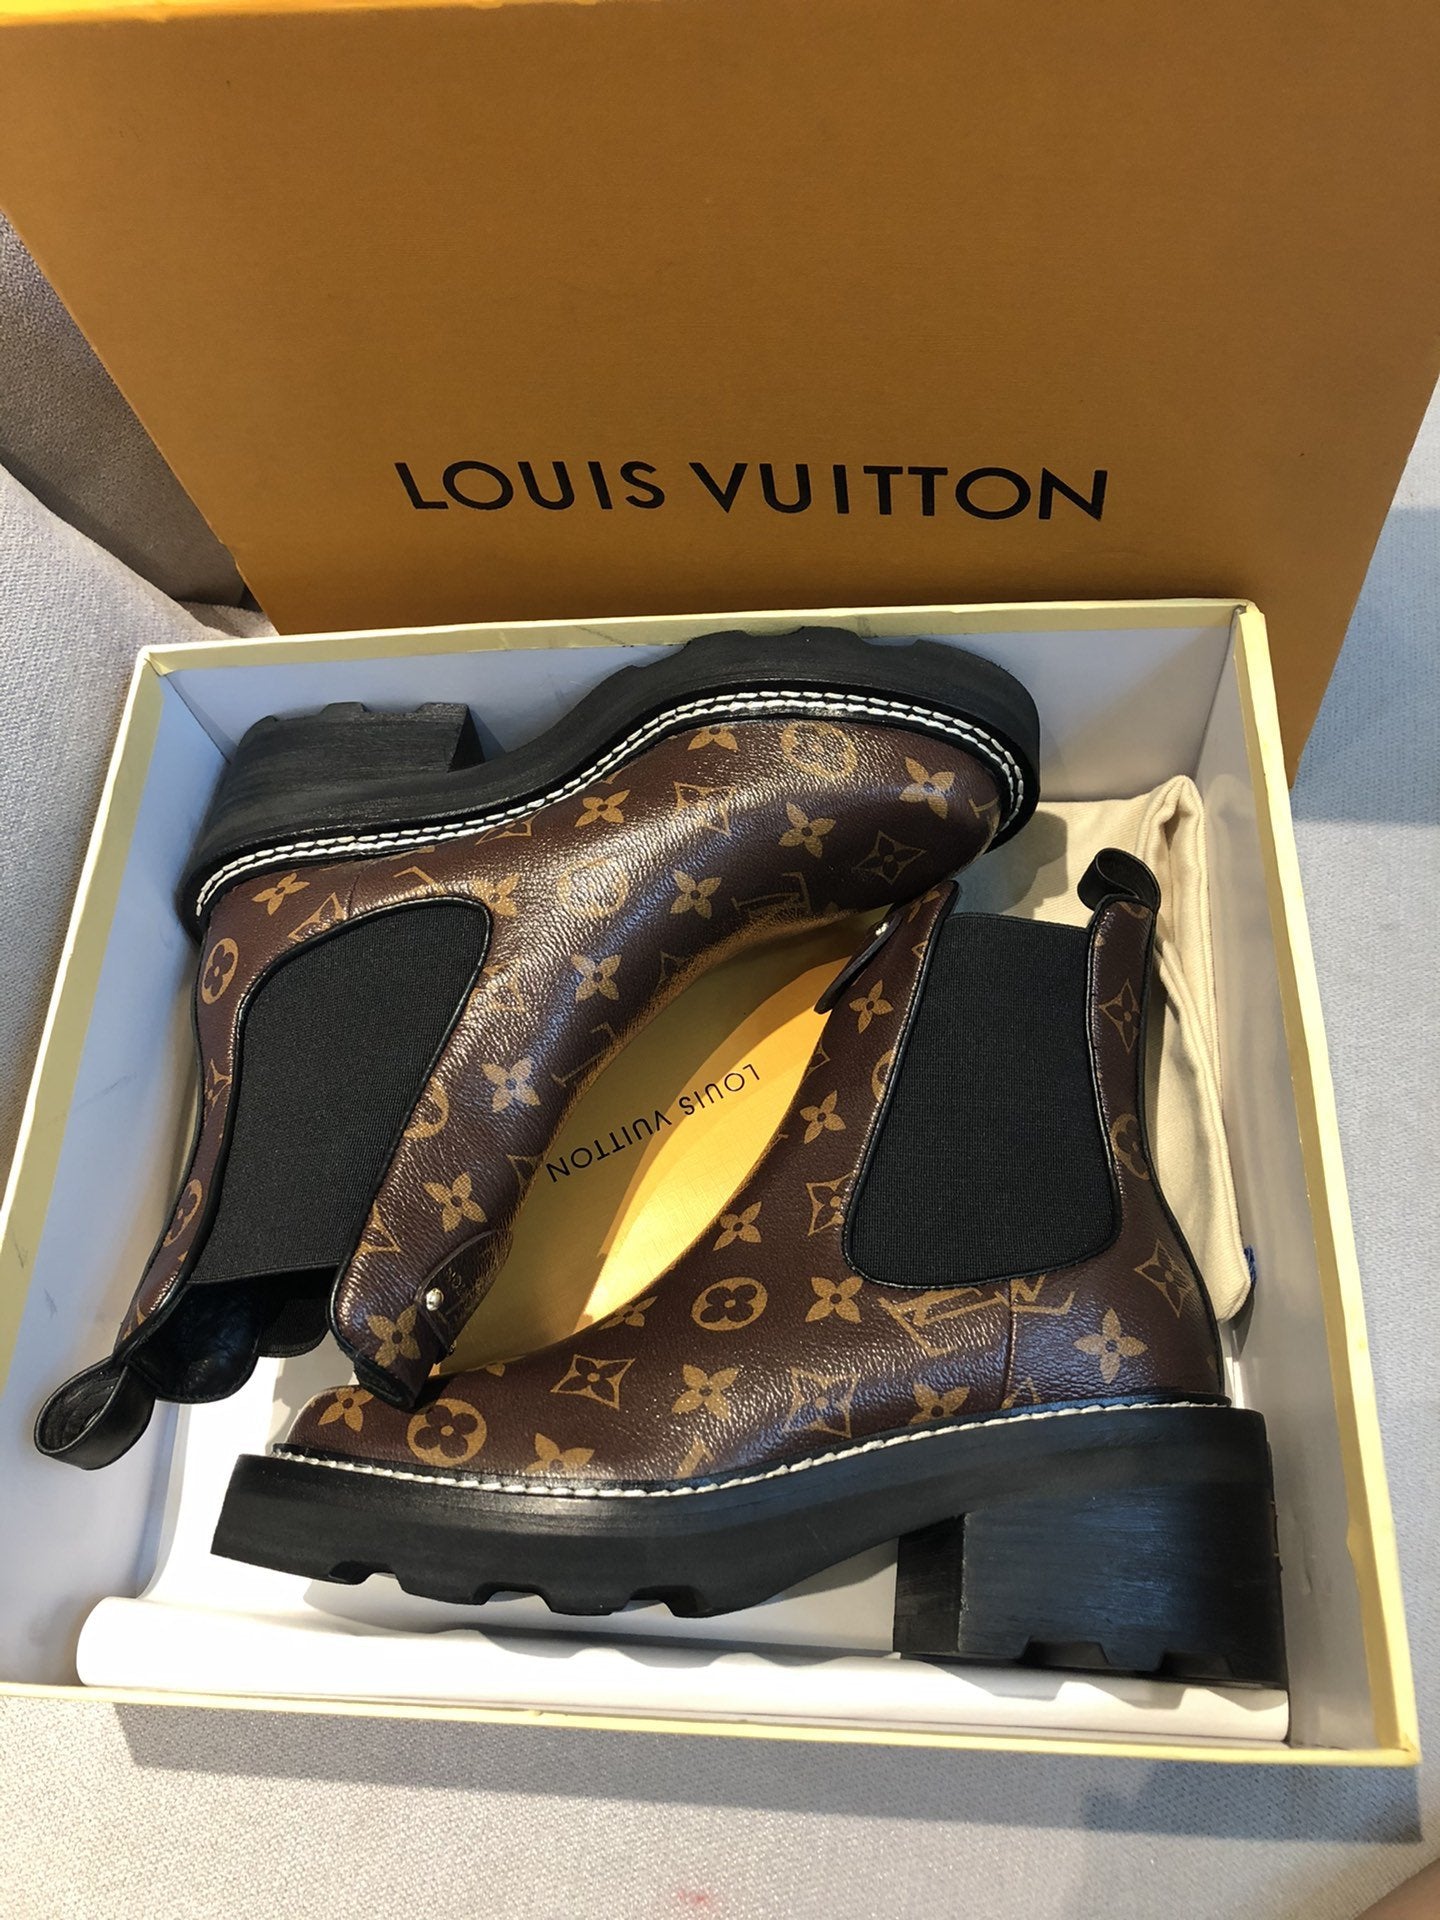 LV BEAUBOURG ENKELLAARS Louis Vuitton – KJ VIPS